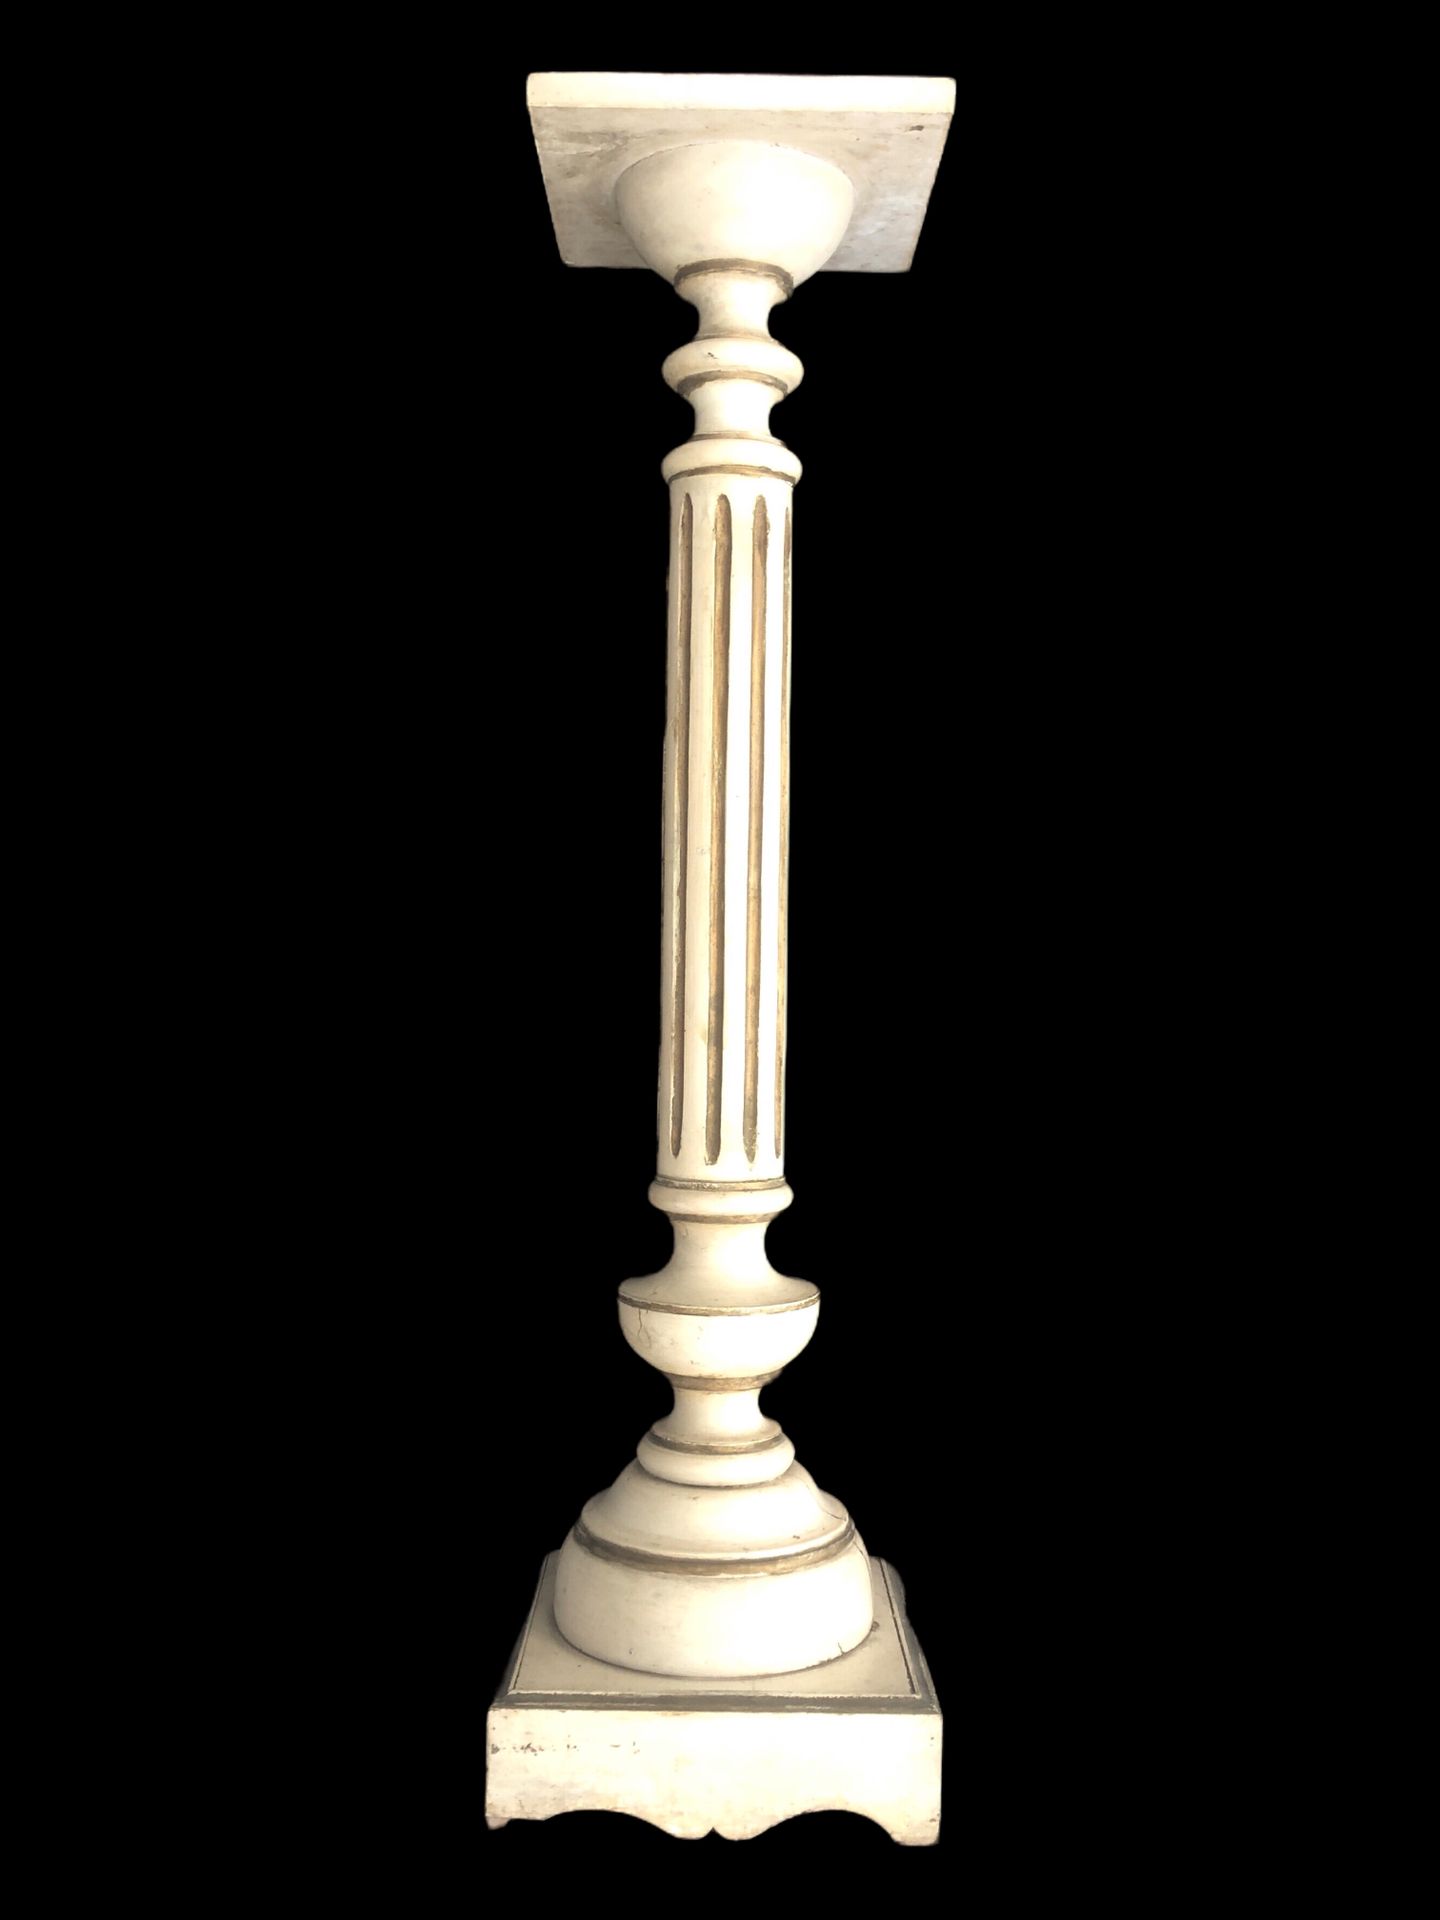 Null 一个木雕马鞍，凹槽轴安放在一个方形底座上。

路易十六风格，19世纪作品。

高度为108厘米。

长28厘米。

裂缝。